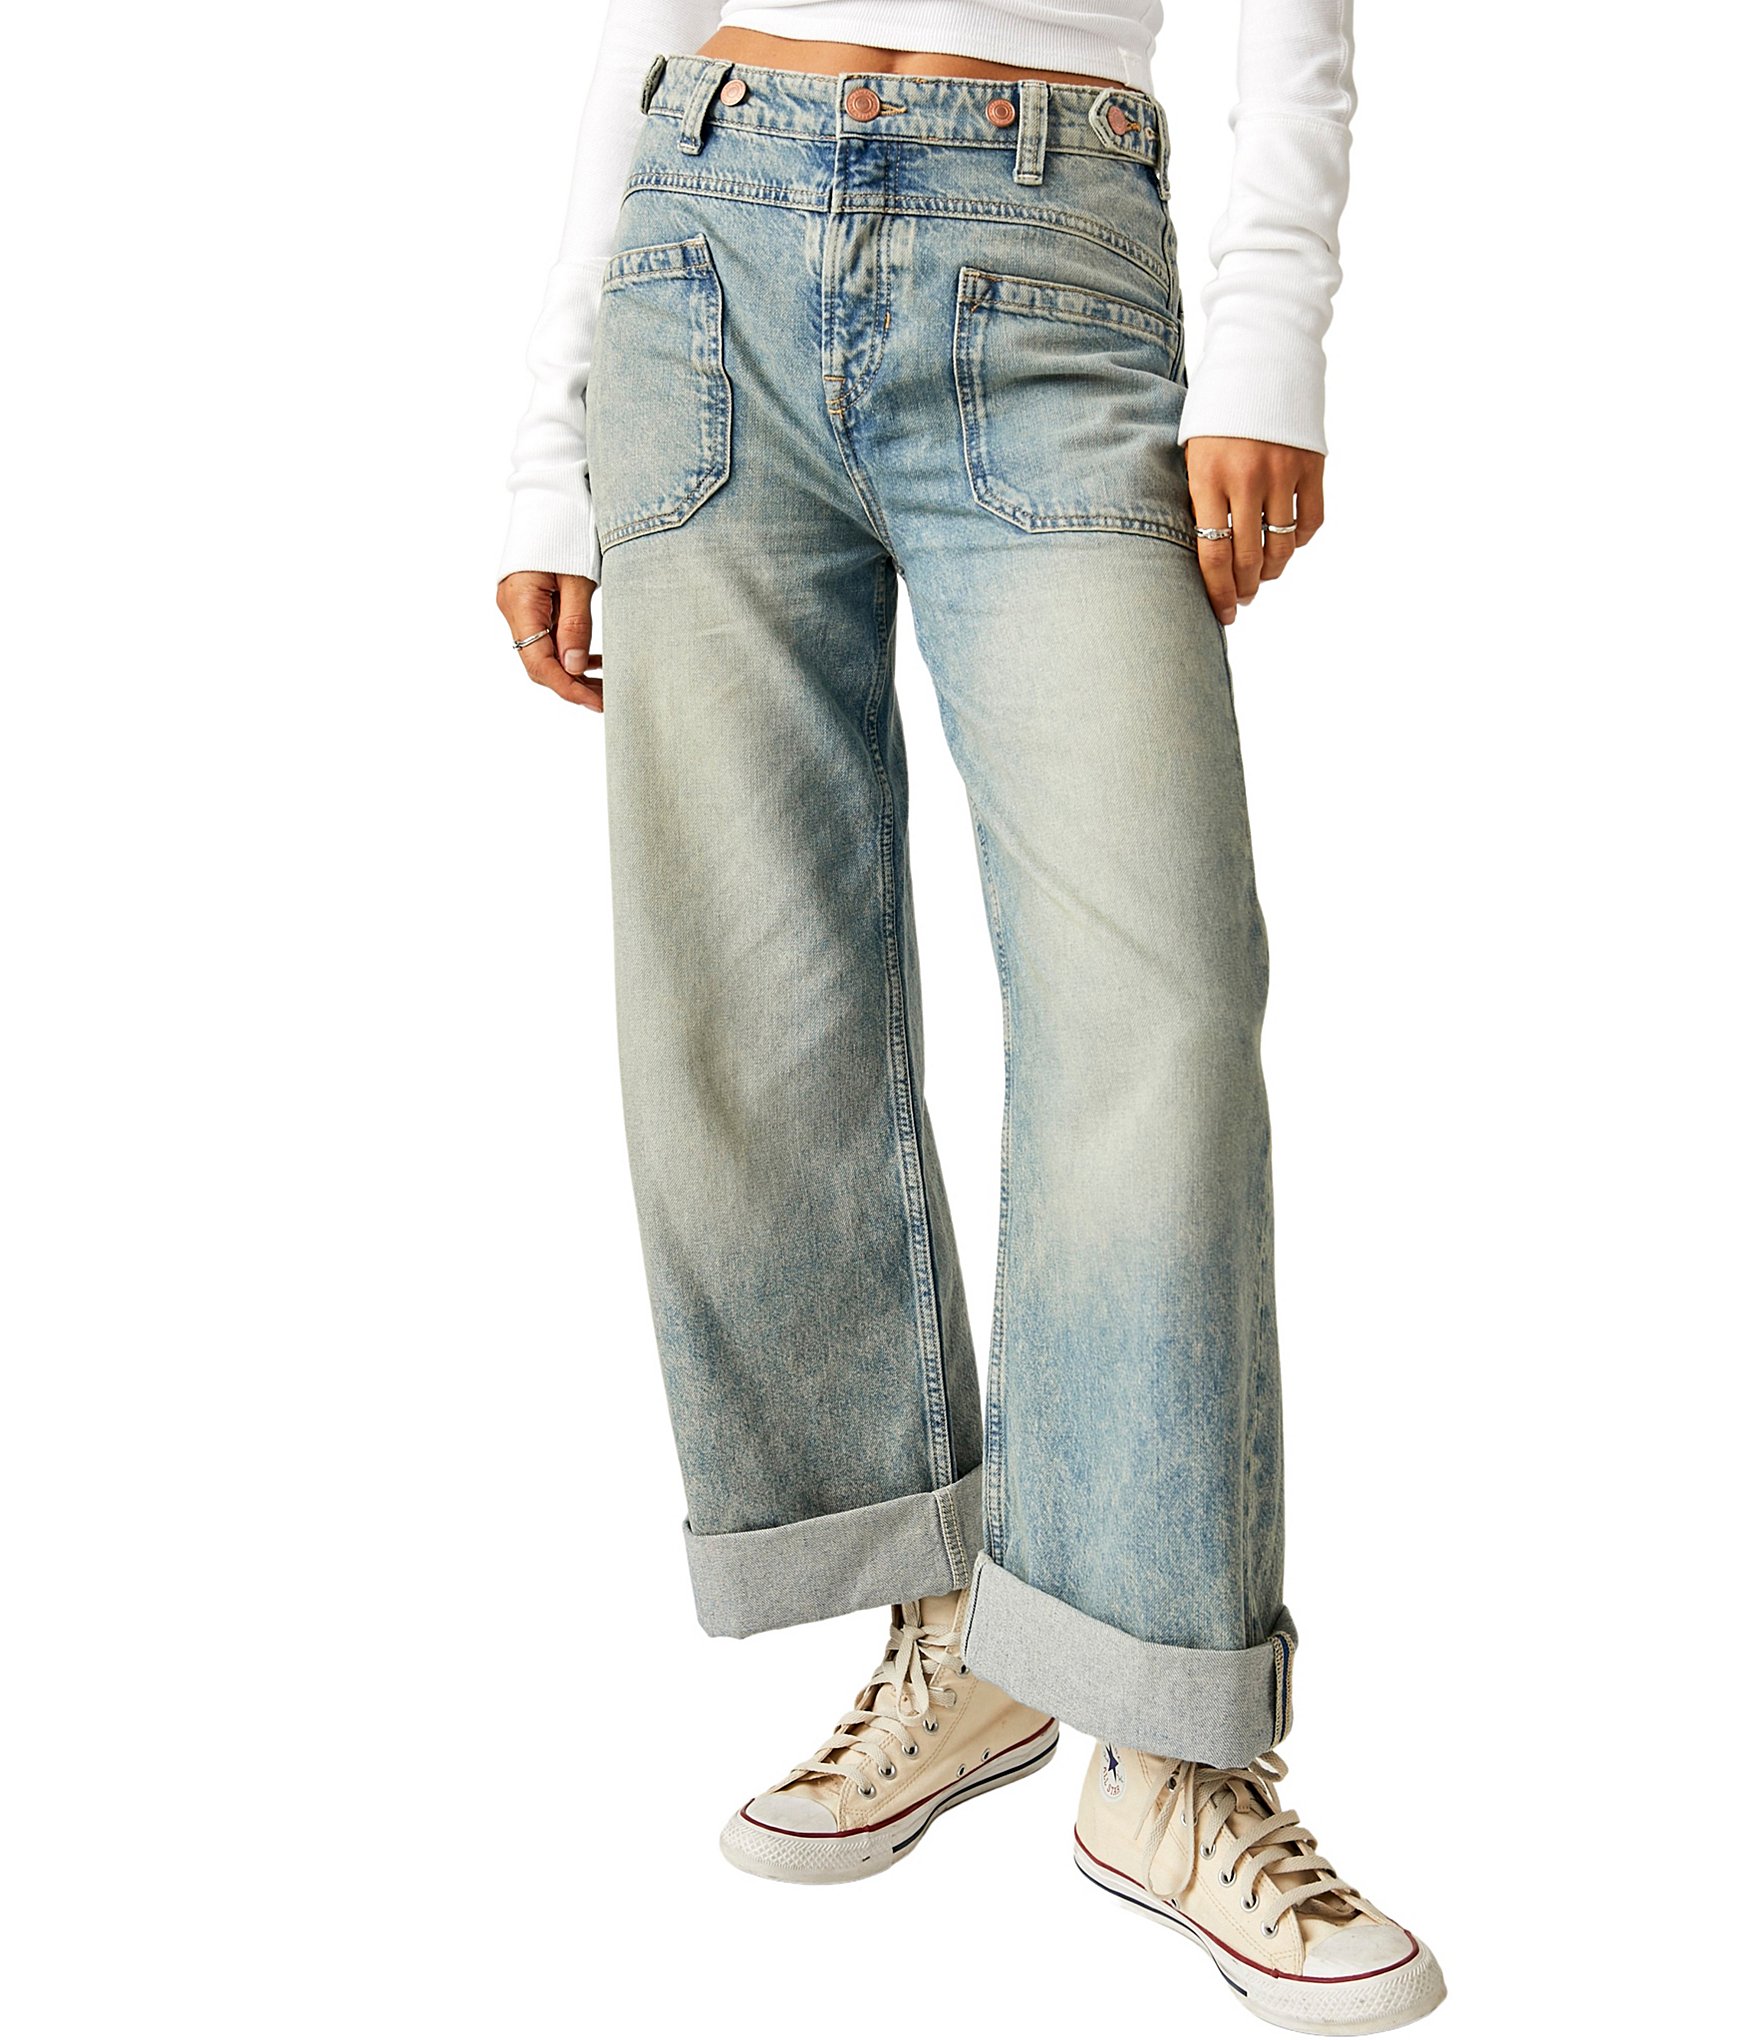 Nicolette shapewear jeans, Jeans